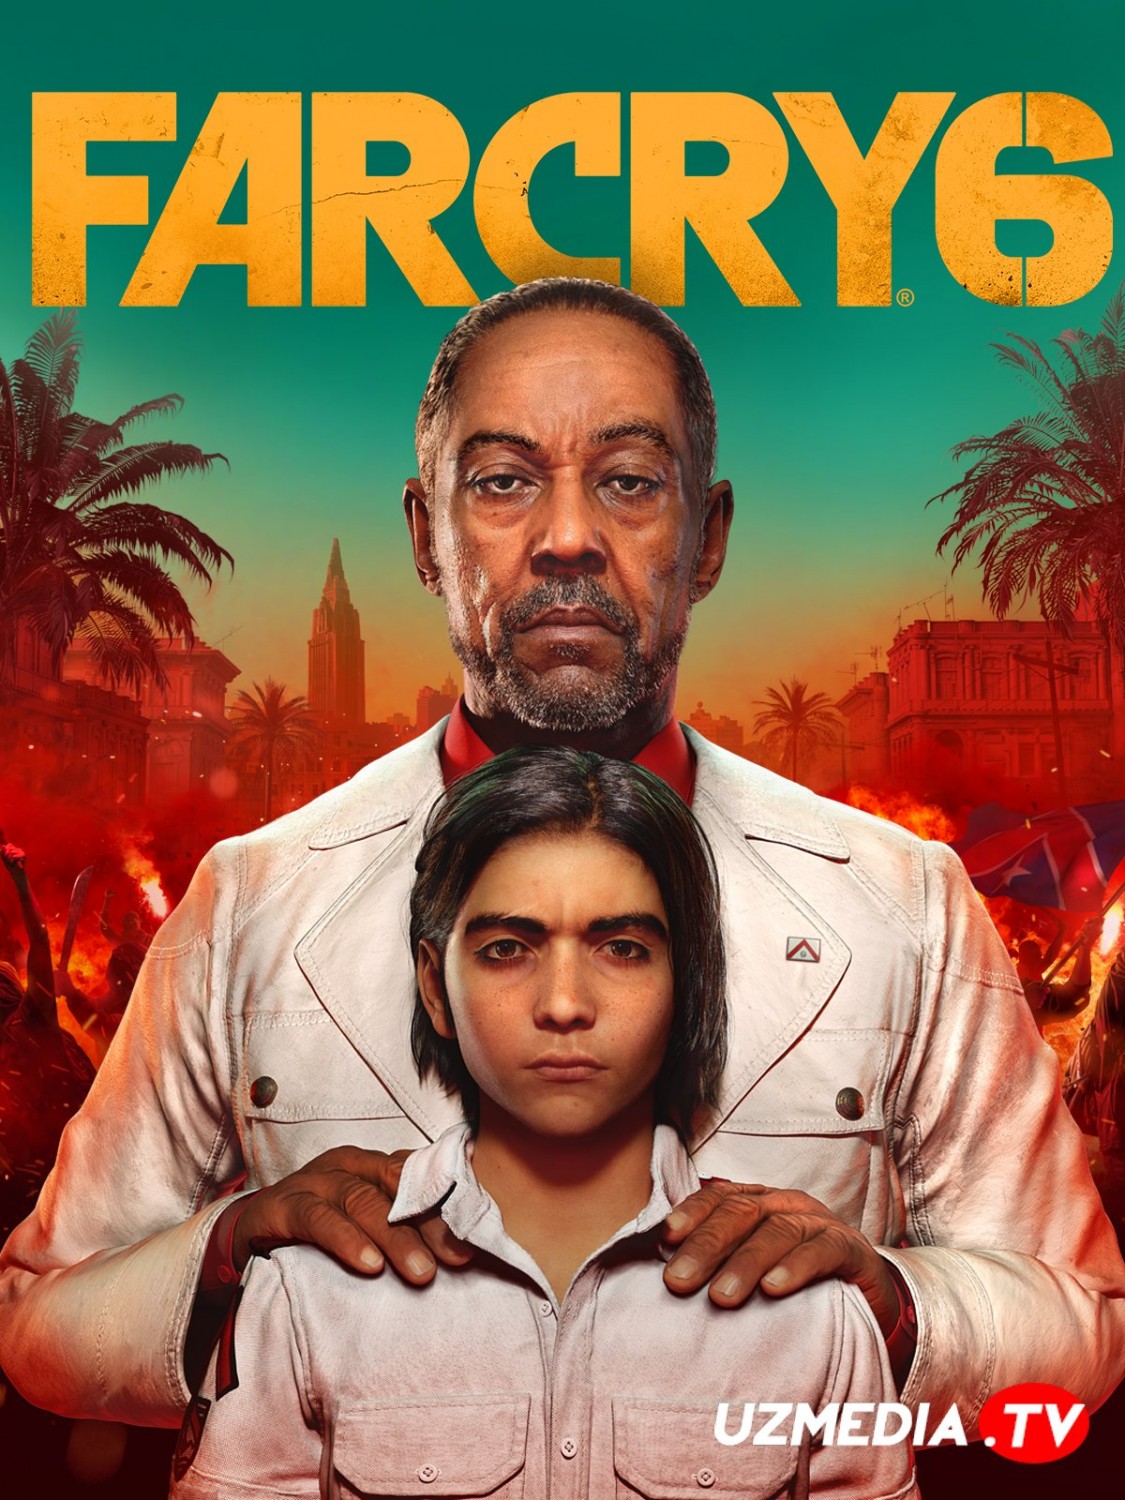 Far Cry 6 (Фар Край 6) 2021 игры для ПК Tas-IX скачать торрент бесплатно